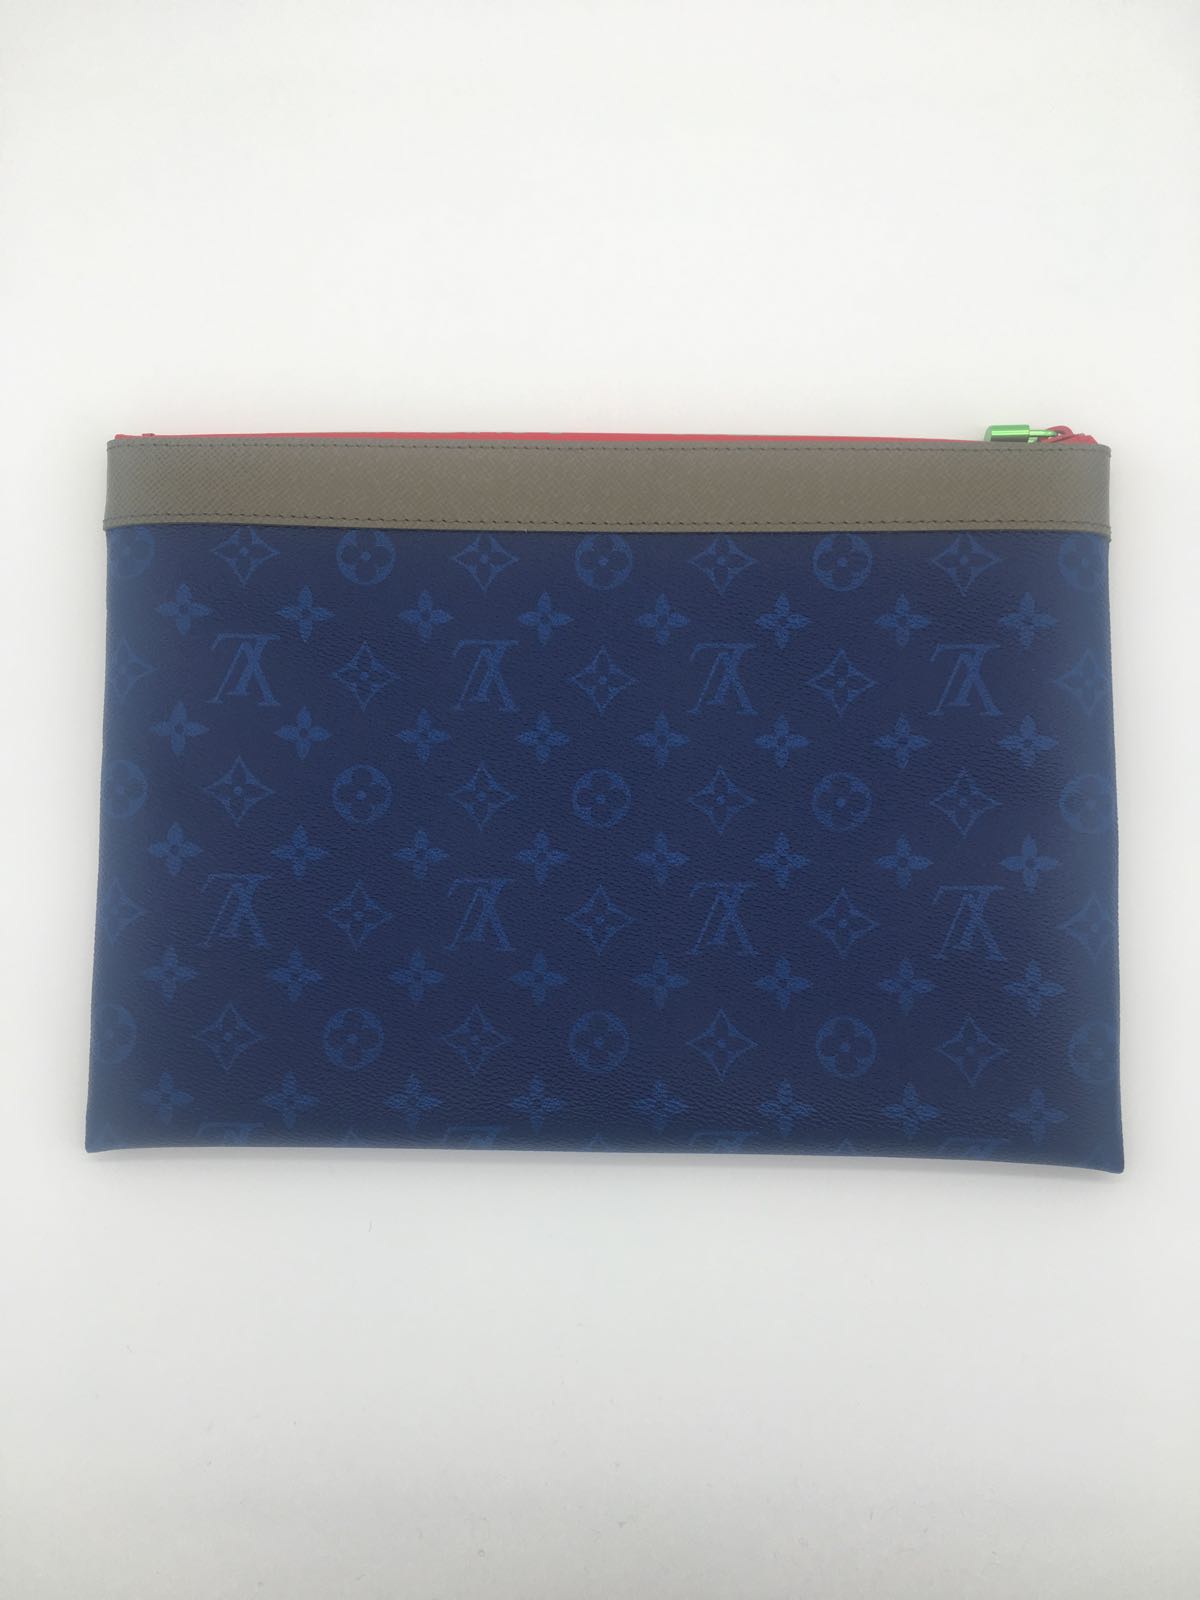 Louis Vuitton Monogram Canvas Pochette Apollo Bag M63048 Blue 2018